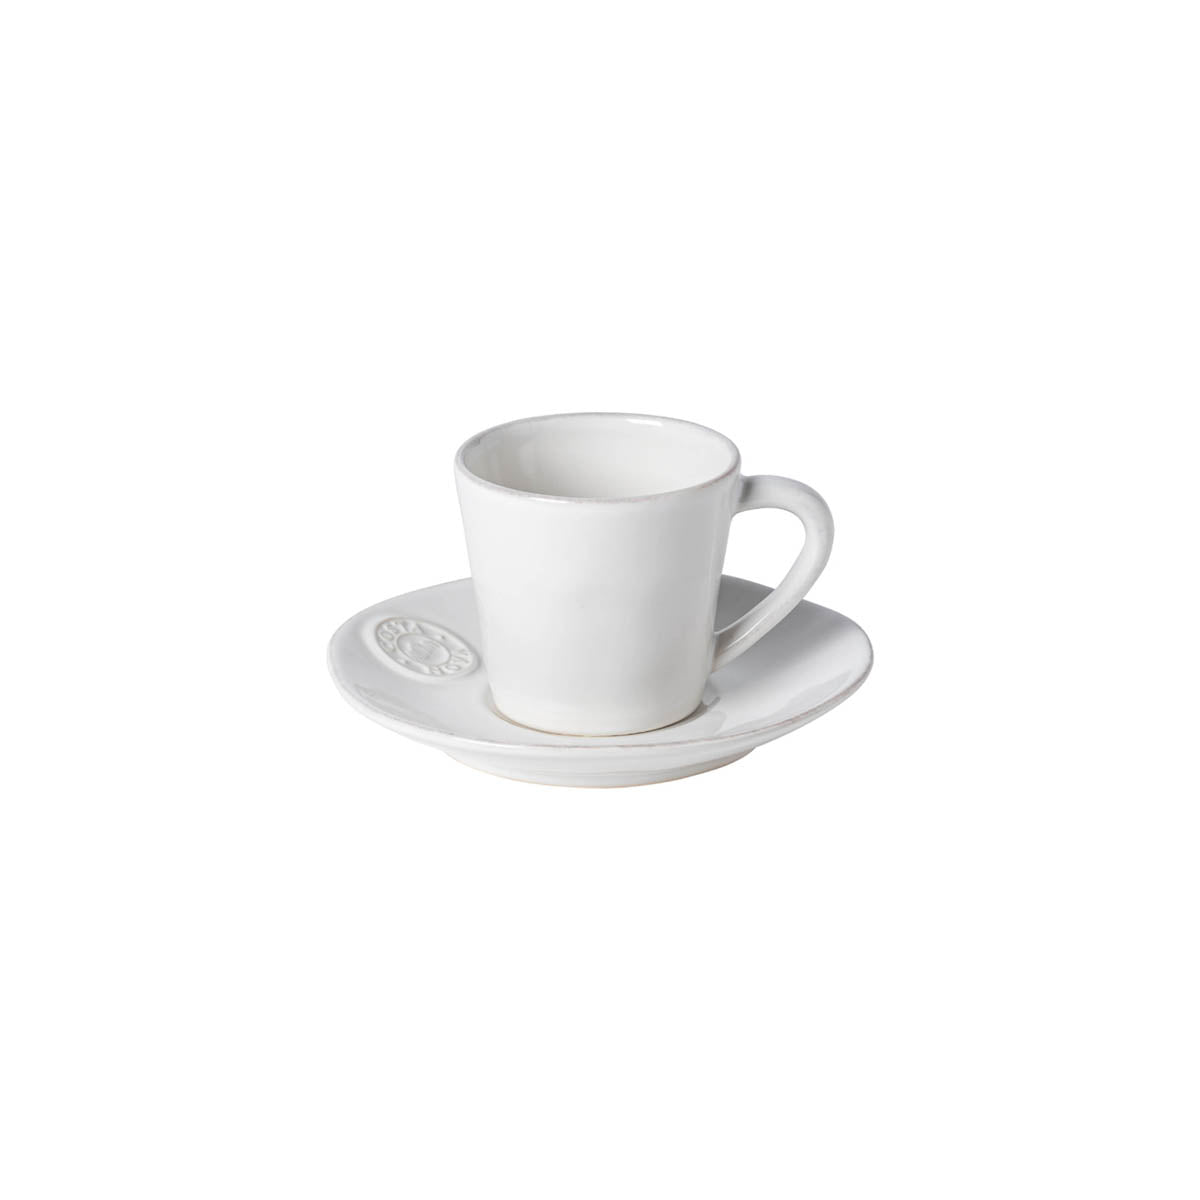 301241 Costa Nova Nova White Tea Cup & Saucer Set 190ml Tomkin Australia Hospitality Supplies